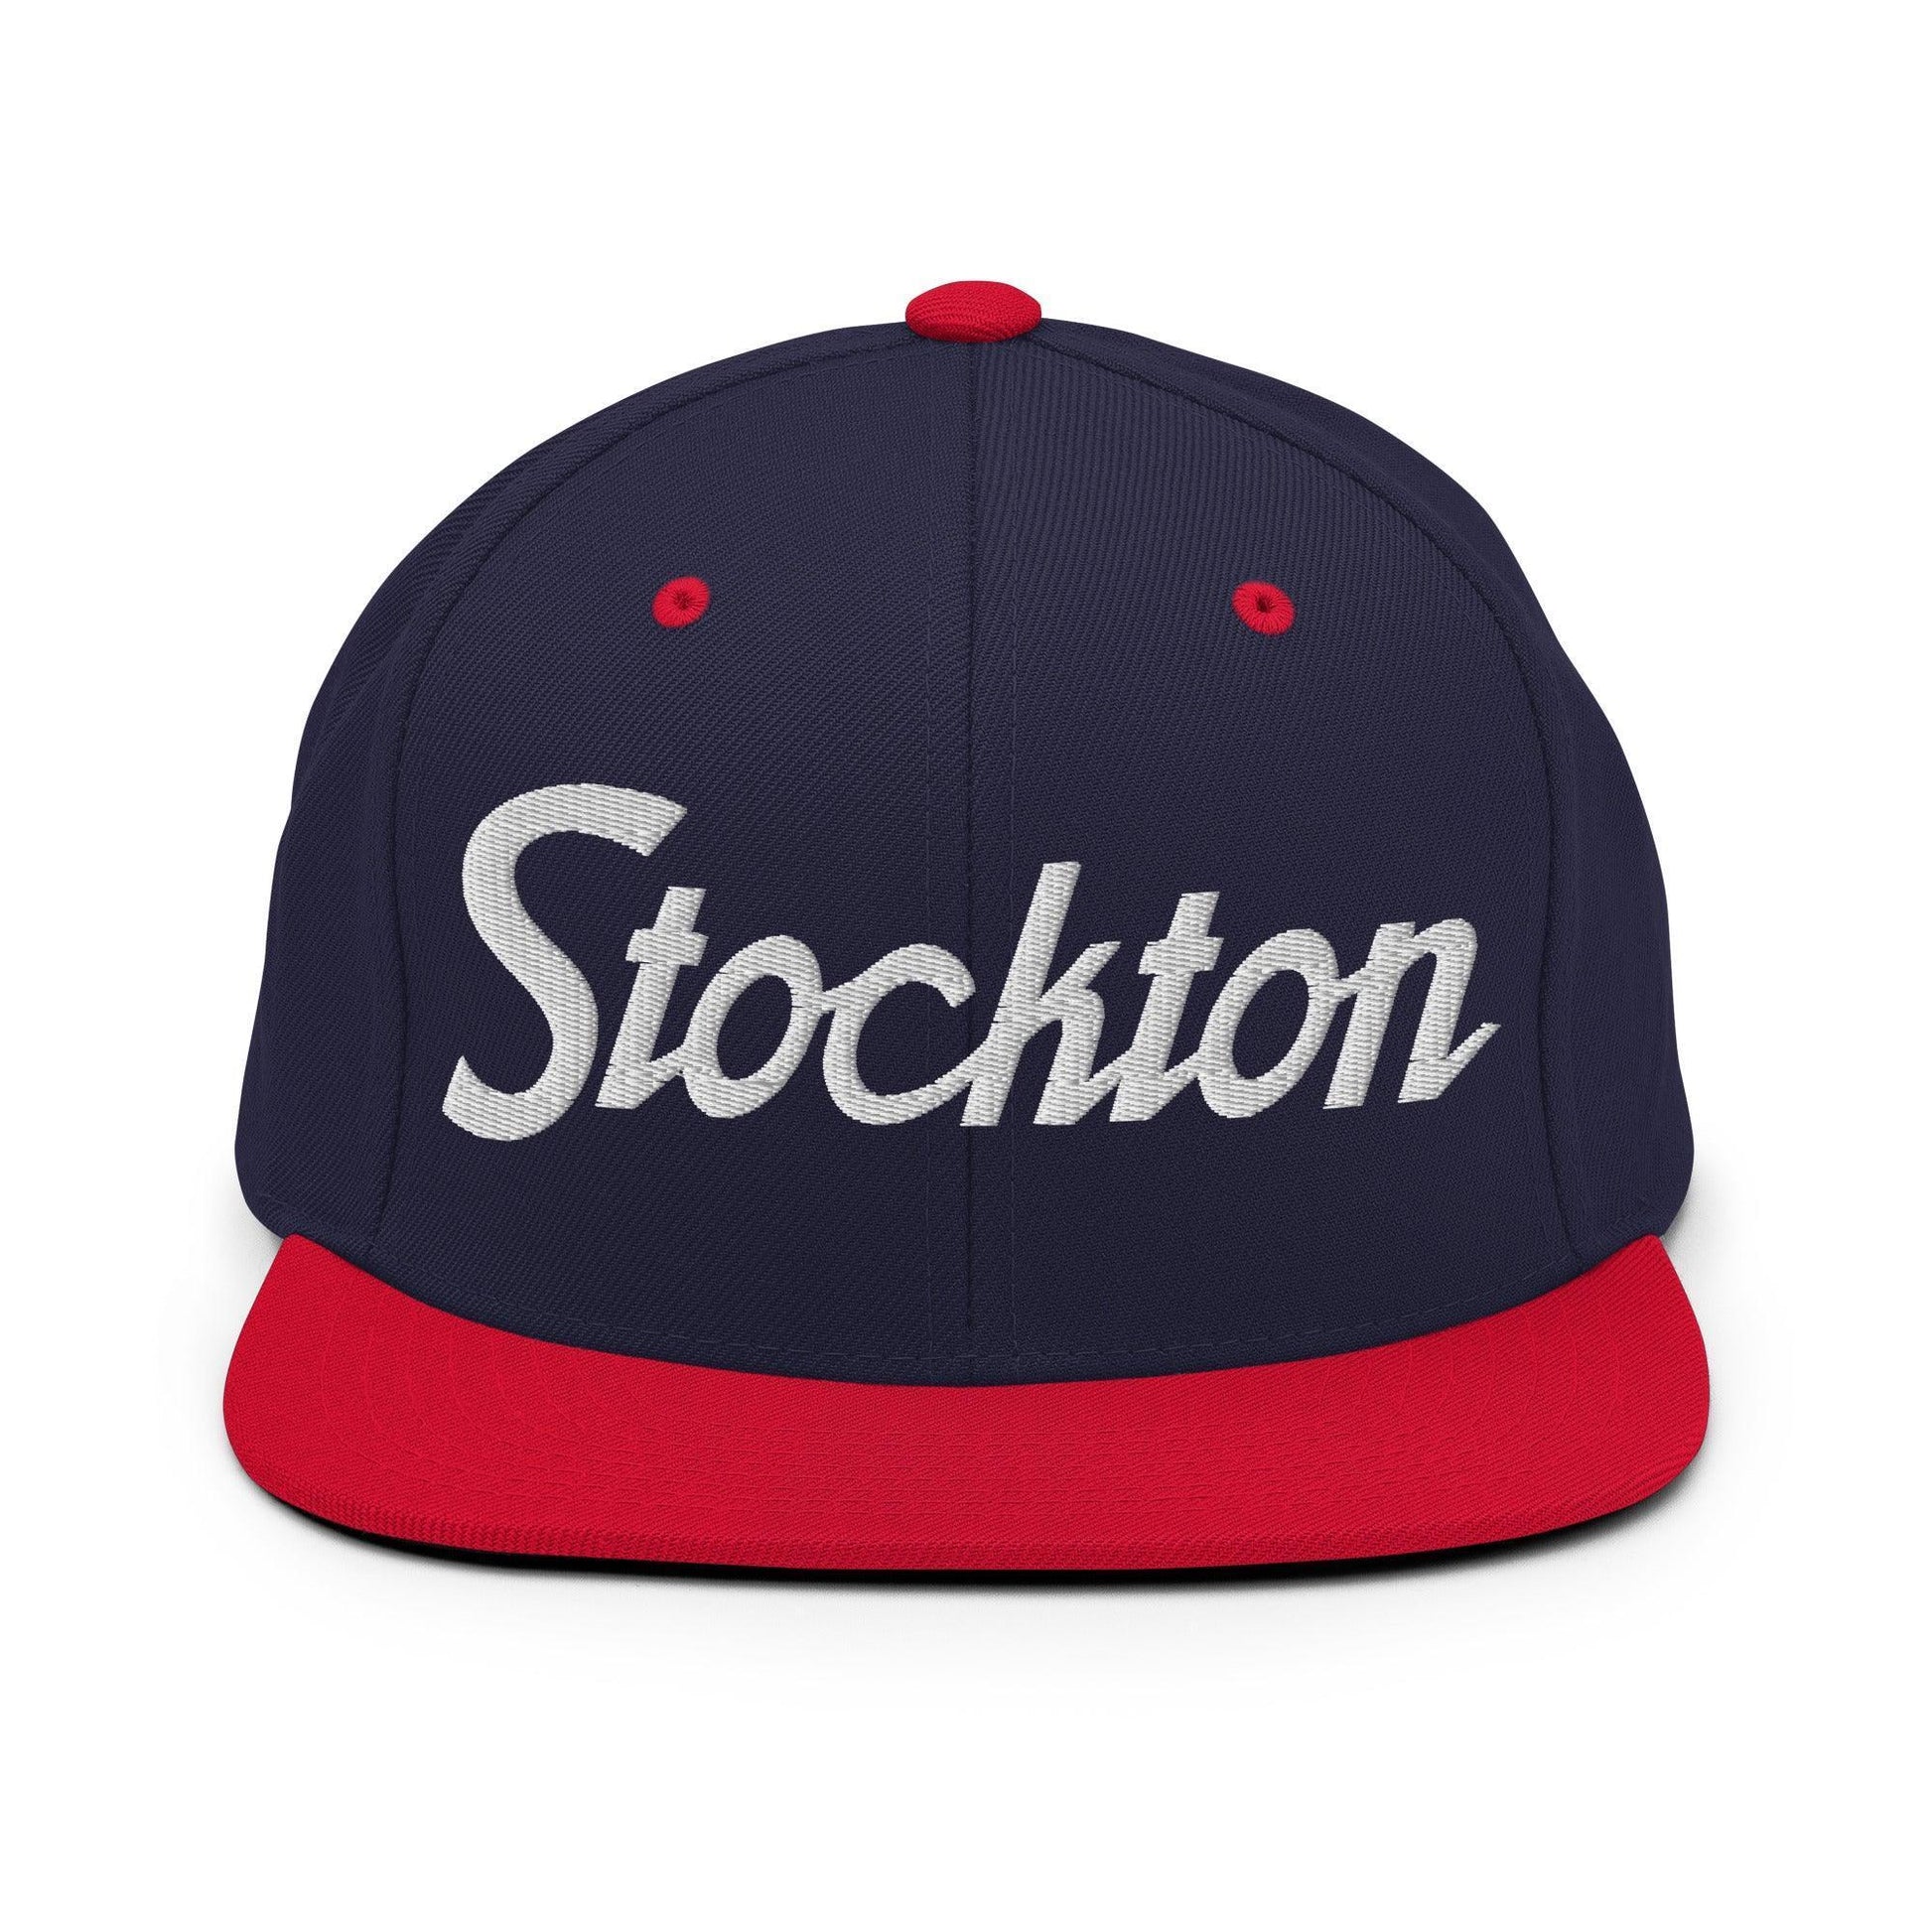 Stockton Script Snapback Hat Navy/ Red